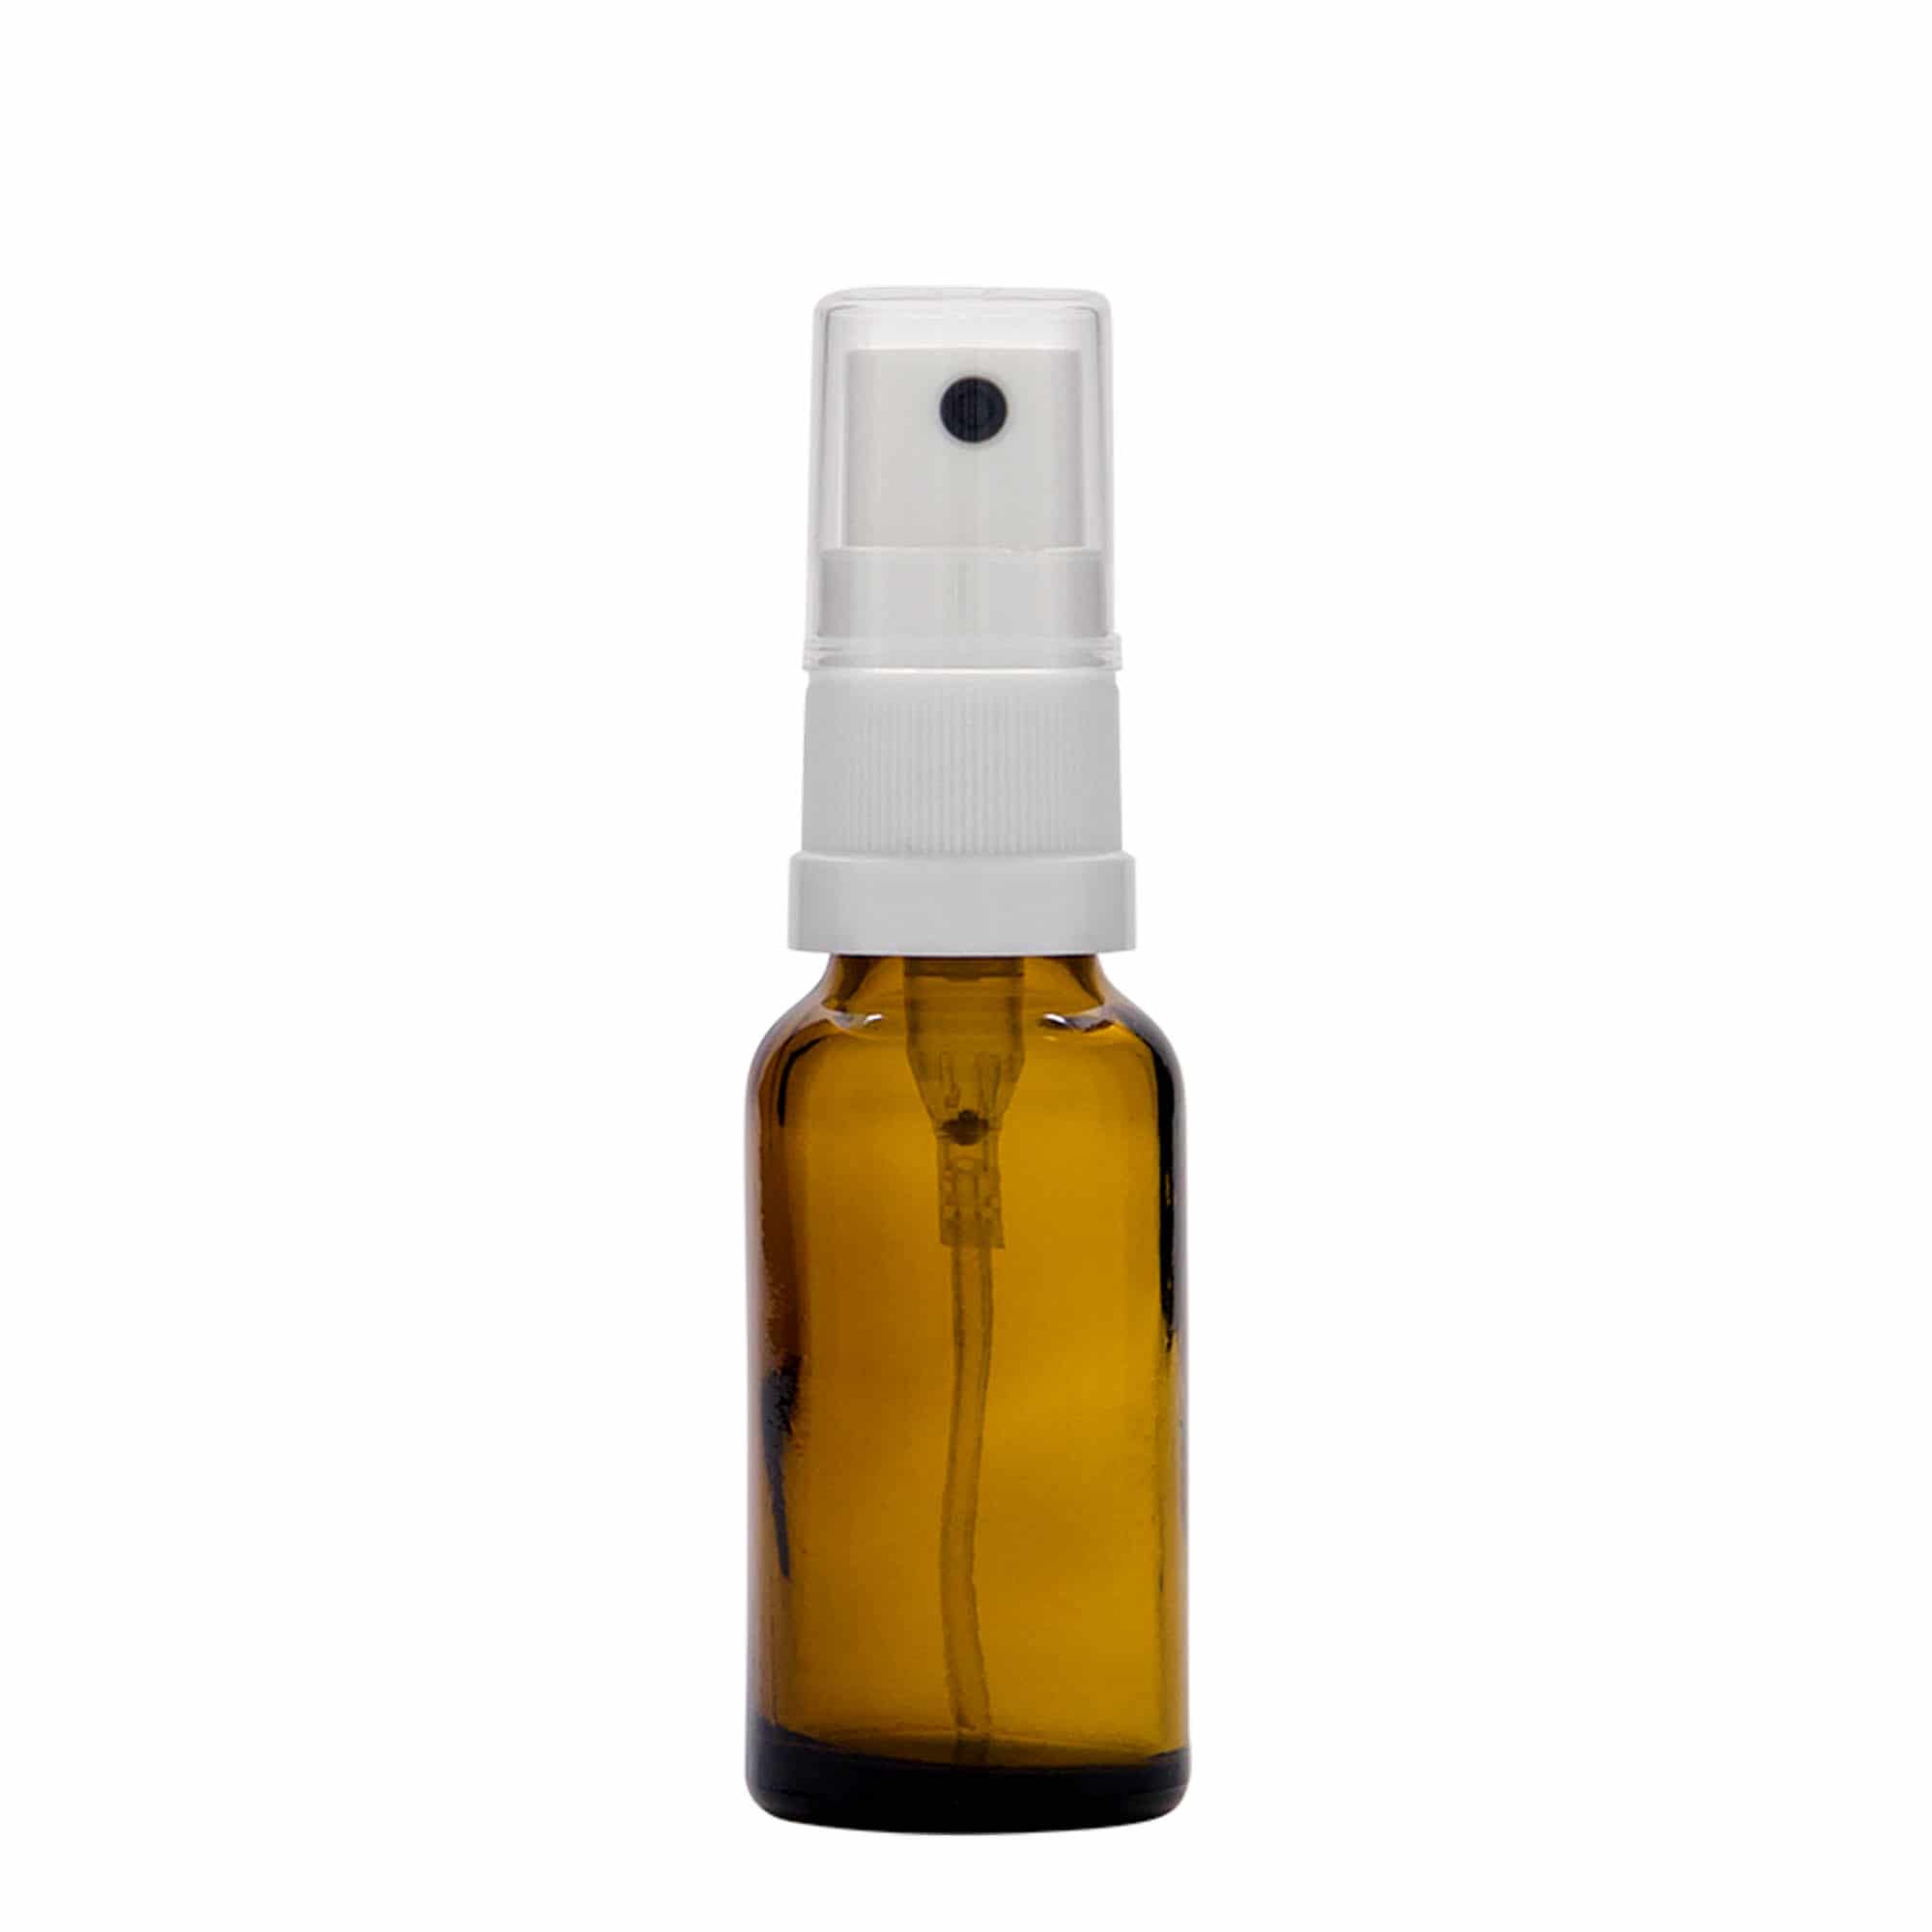 20 ml Flacone spray farmaceutico, vetro, marrone, imboccatura: DIN 18